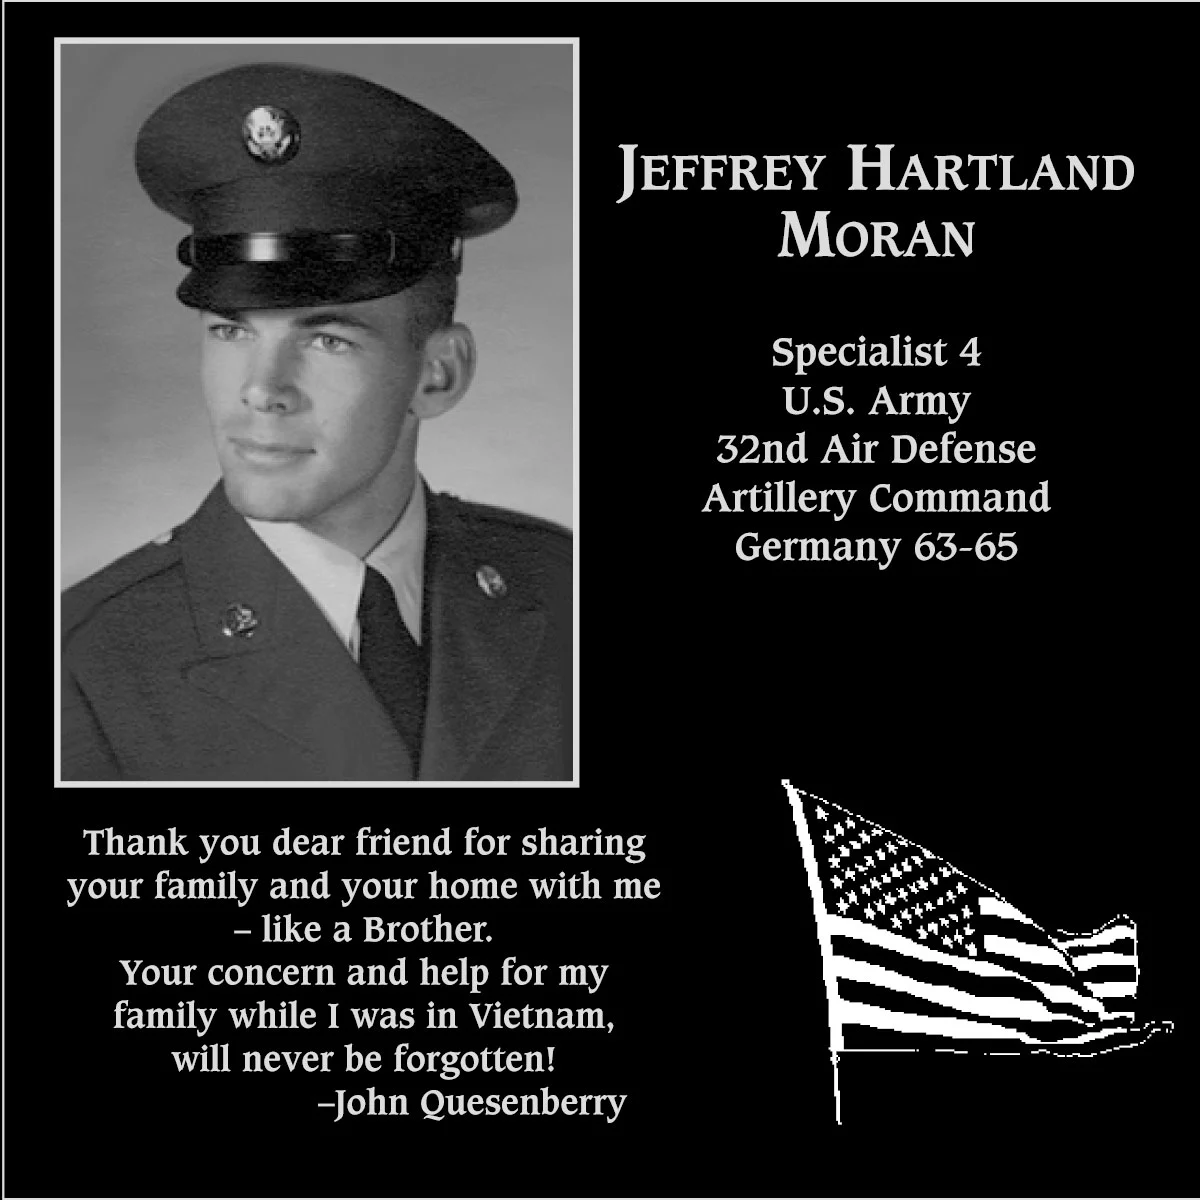 Jeffrey Hartland Moran